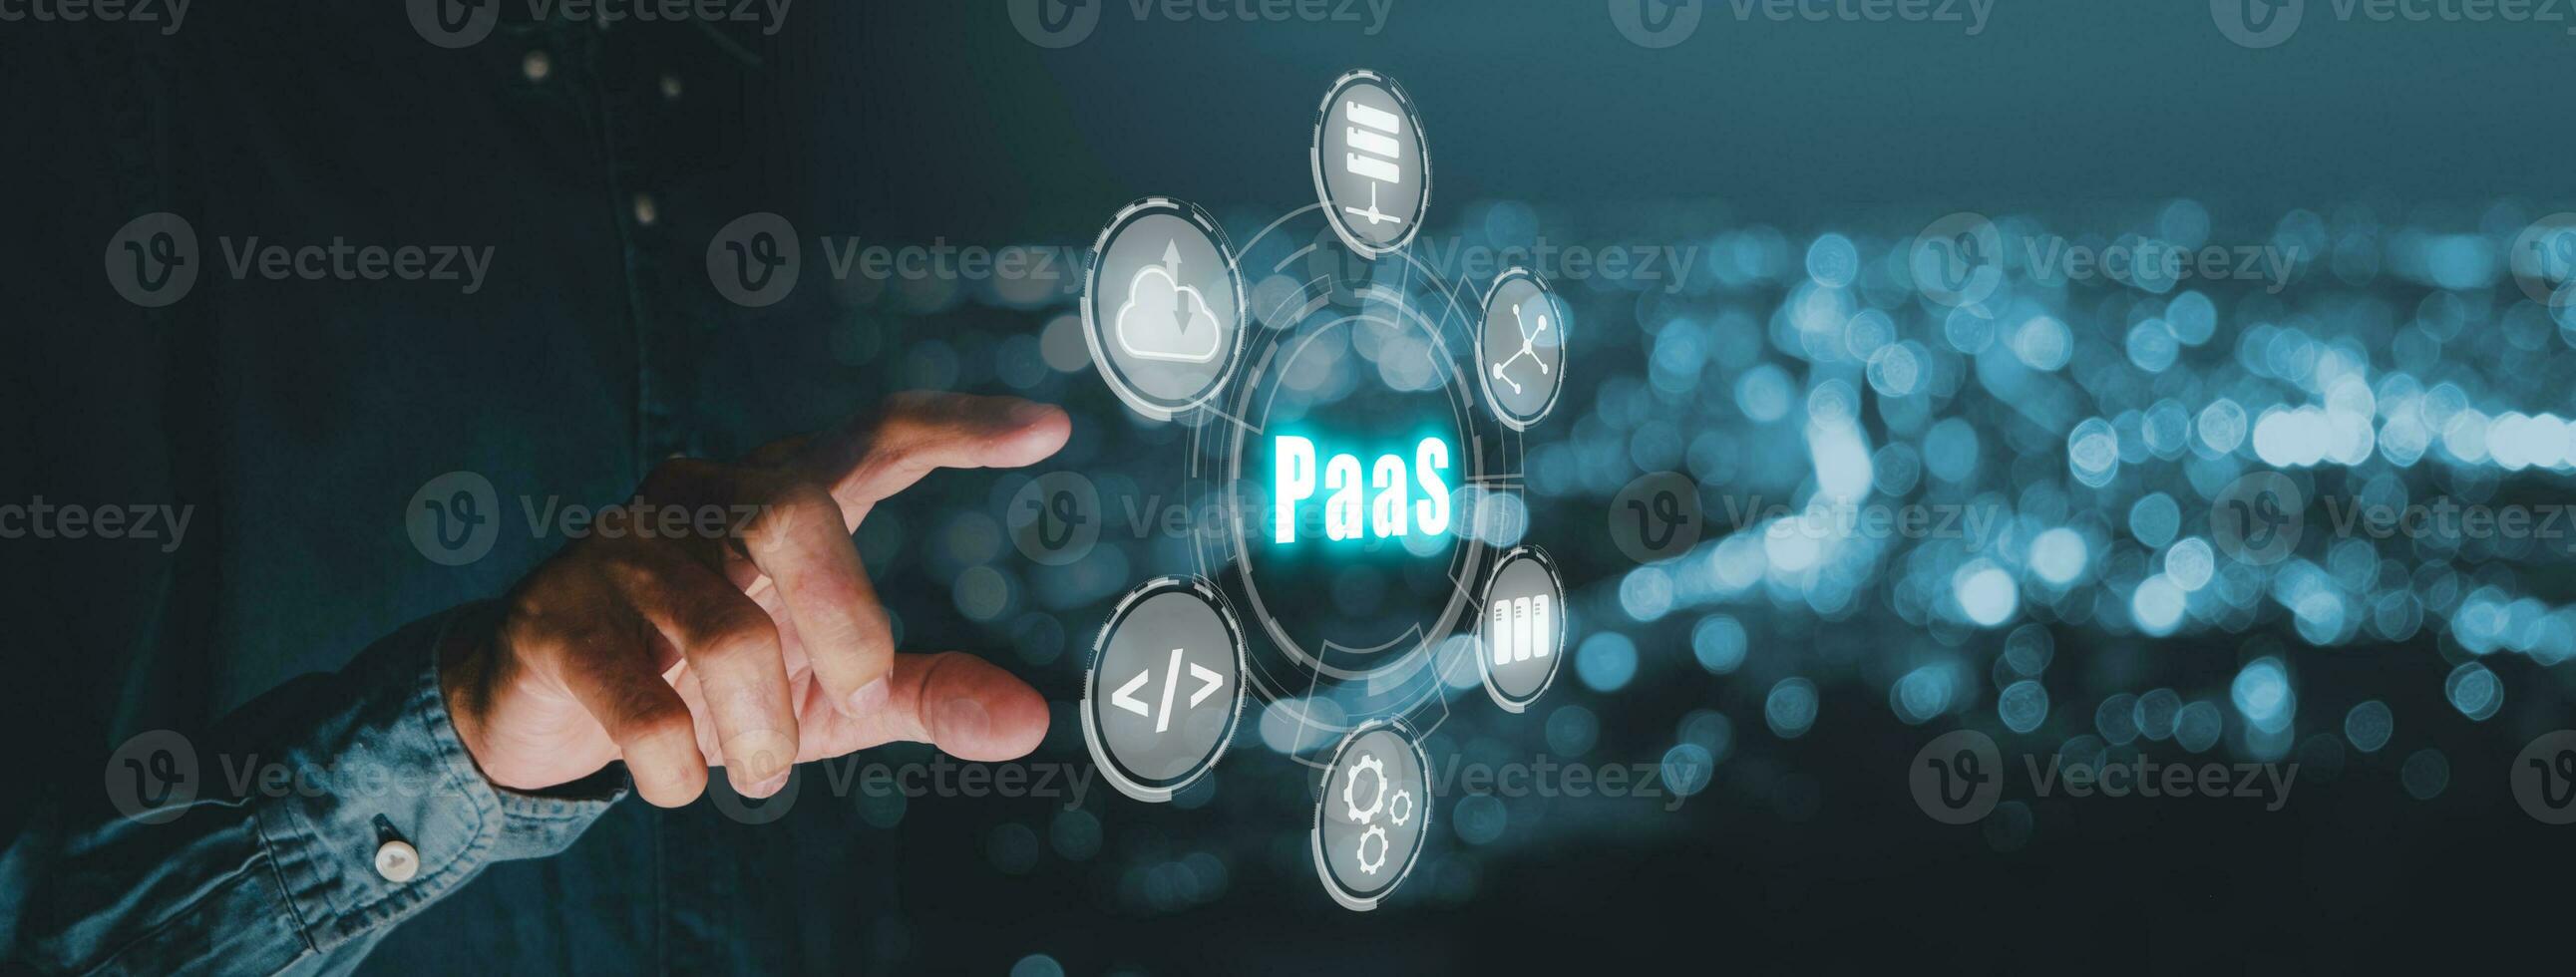 paas - plattform som en service, man hand rörande paas ikon på vr skärm på blå bokeh bakgrund, internet teknologi och utveckling begrepp. foto